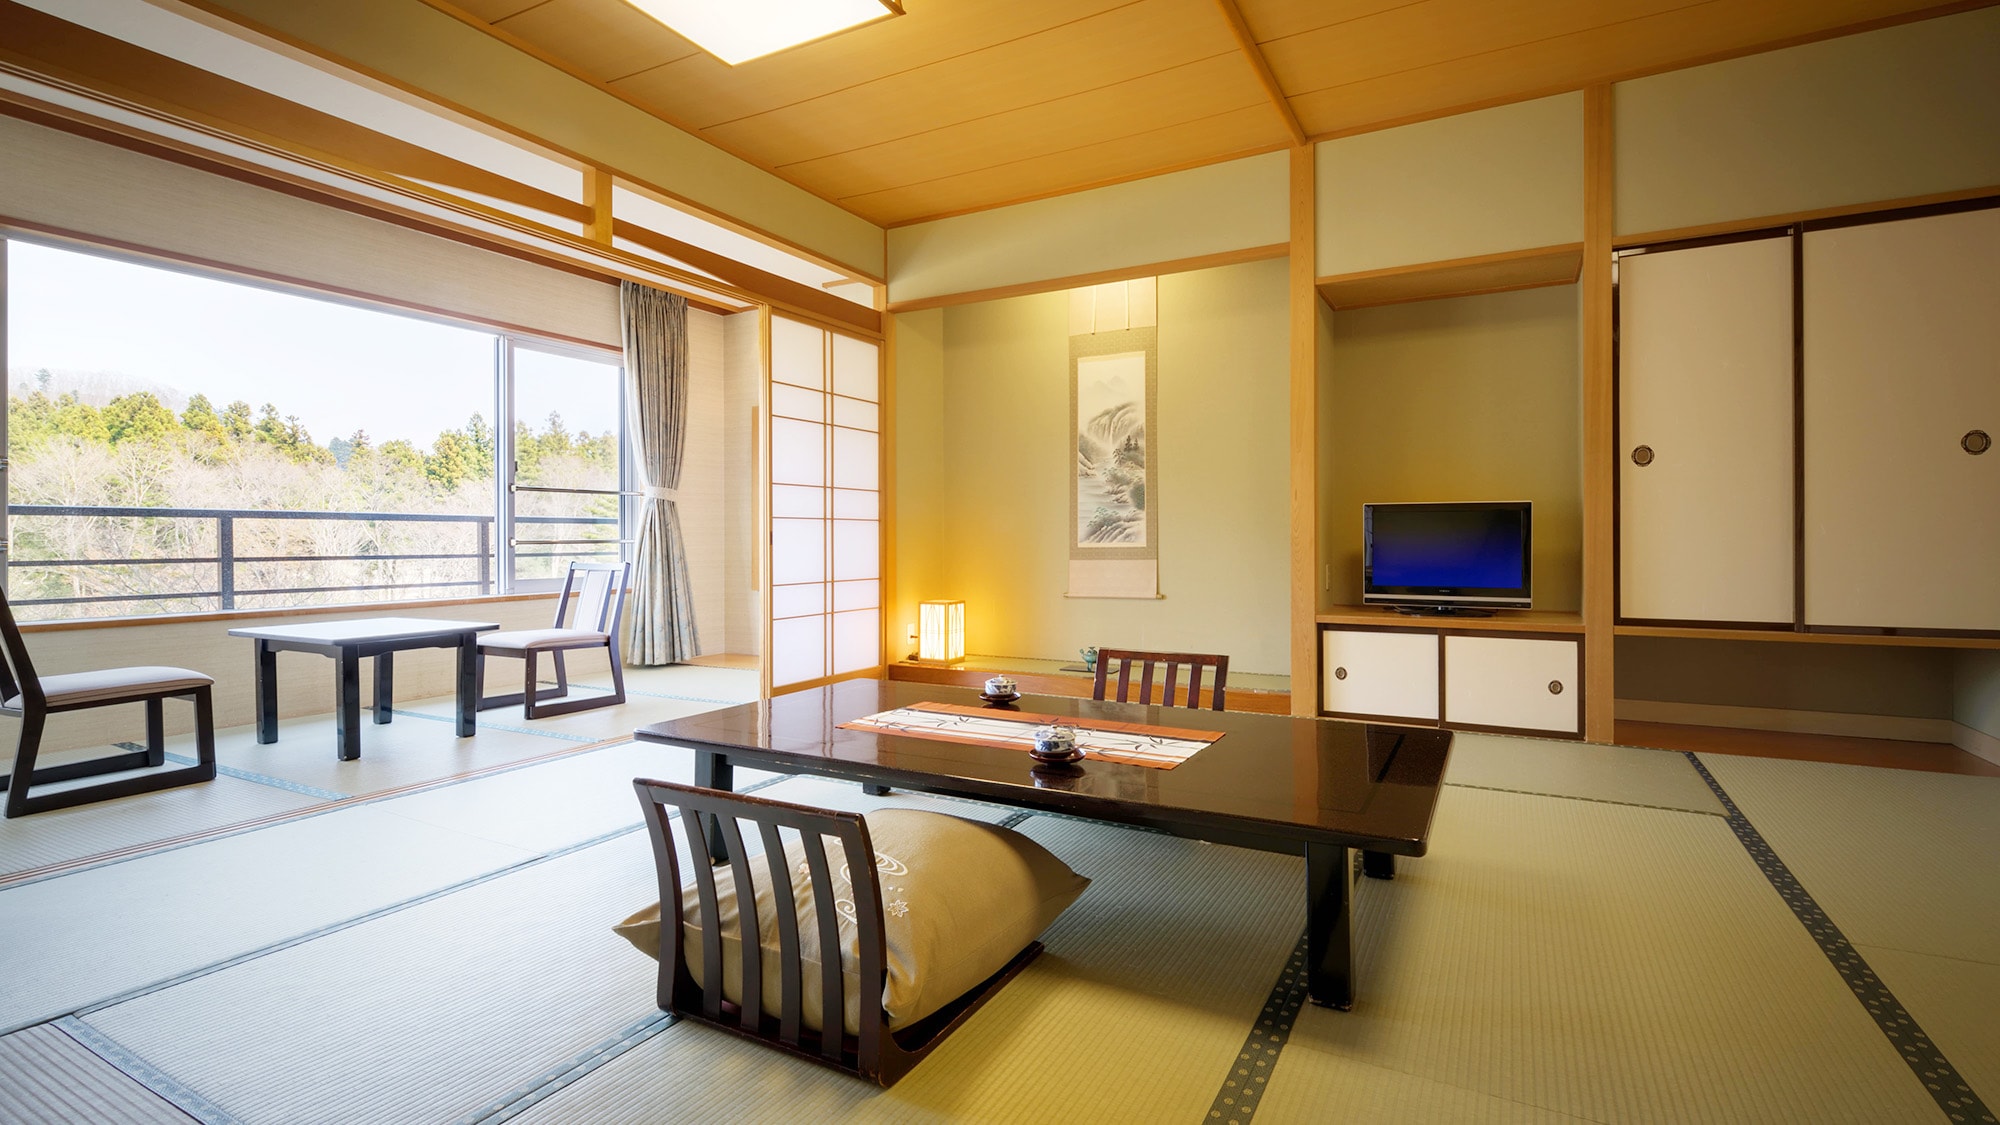 일본식 객실 [금연] 일례 & 가족; 모든 객실은 금연실입니다.